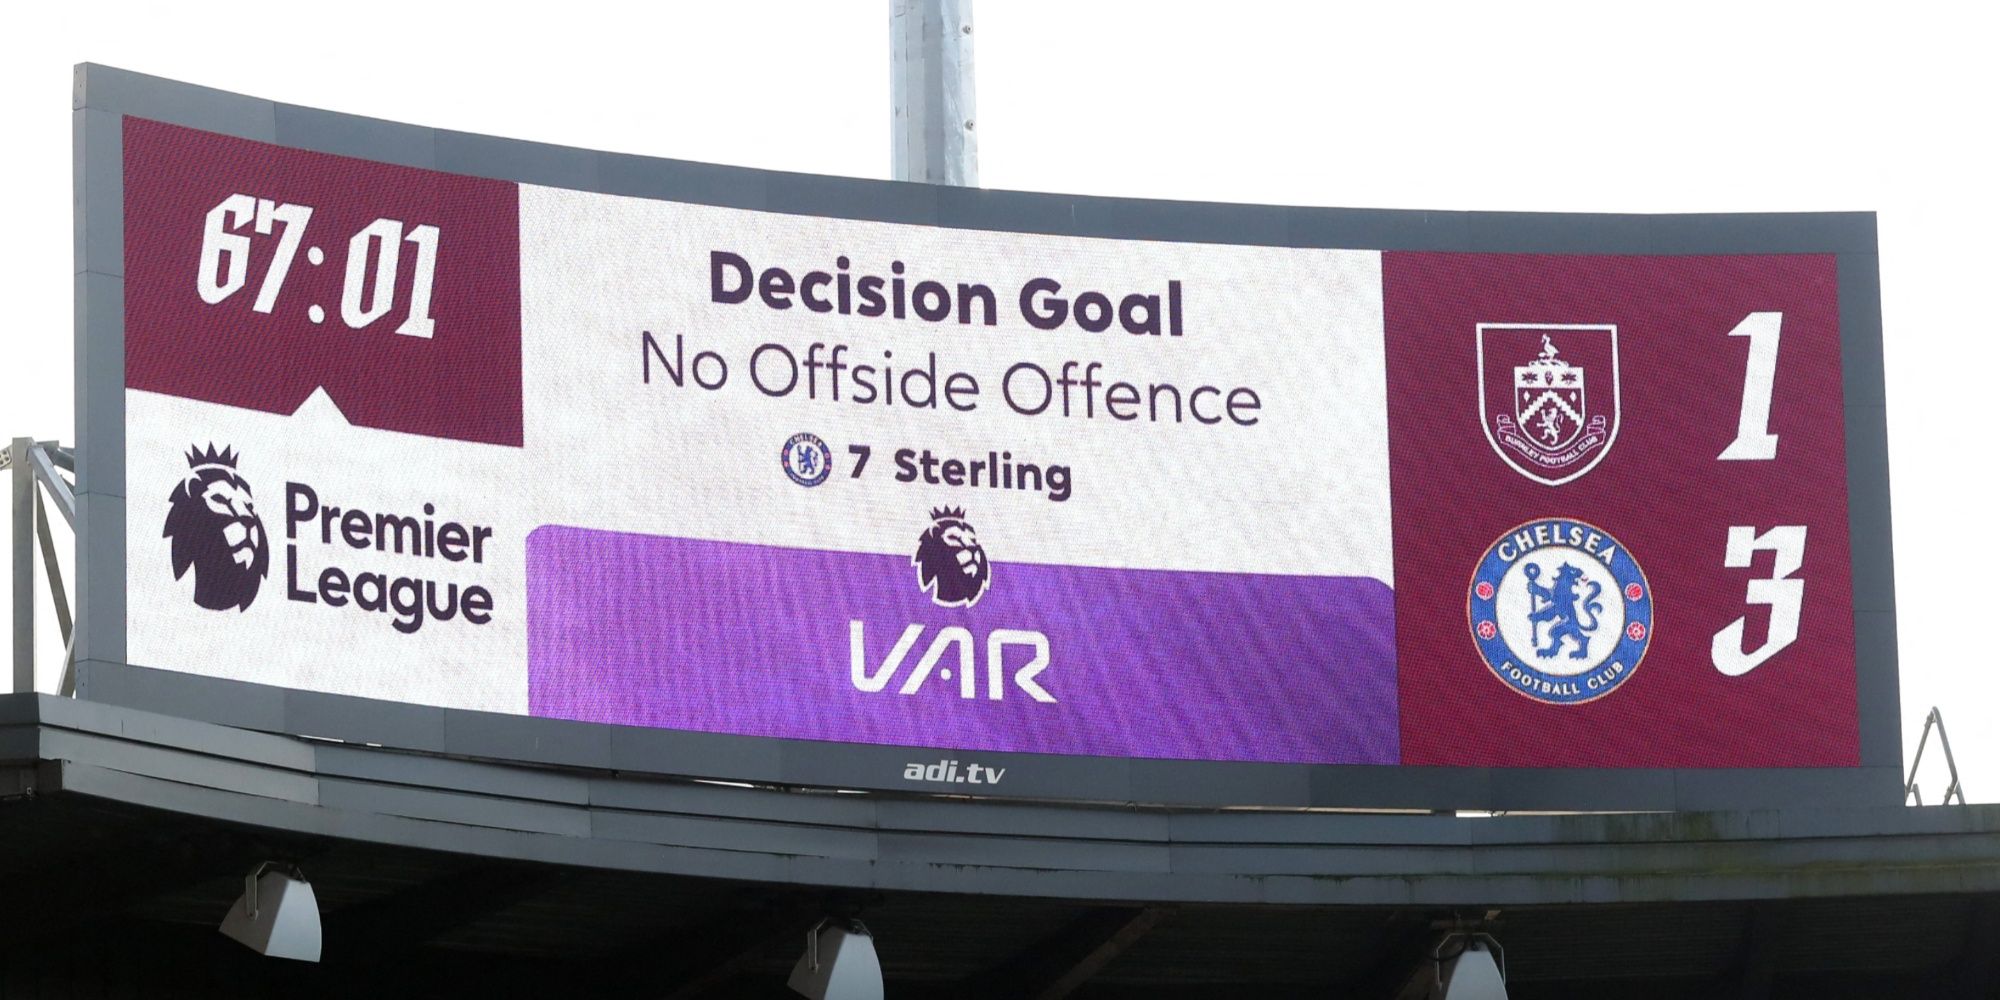 Premier League scoreboard with VAR